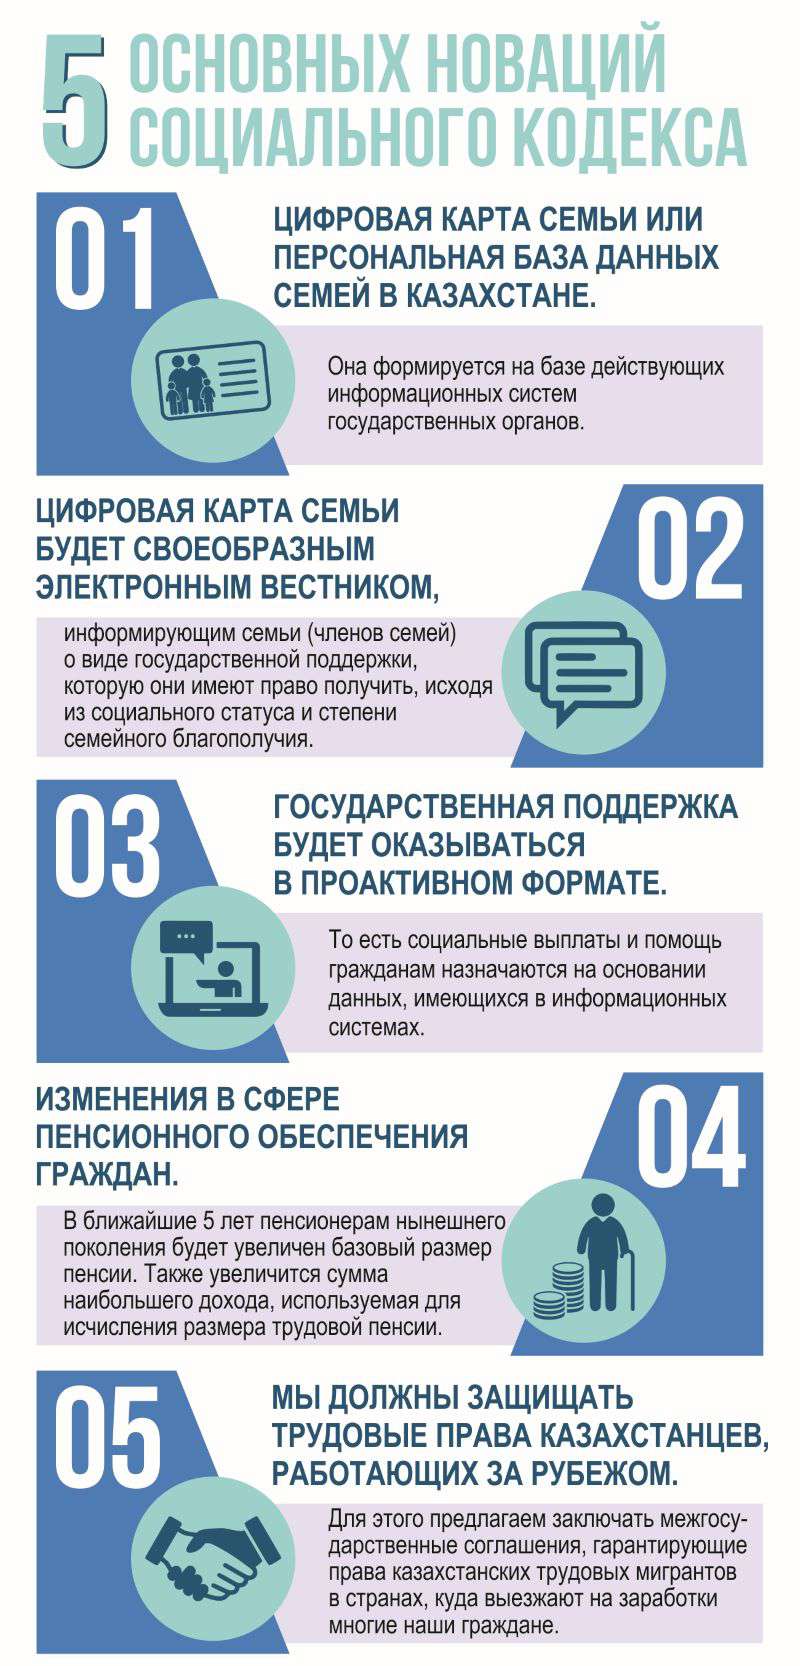 Онлайн закон Казахстана: все изменения, новые правила и важные сроки